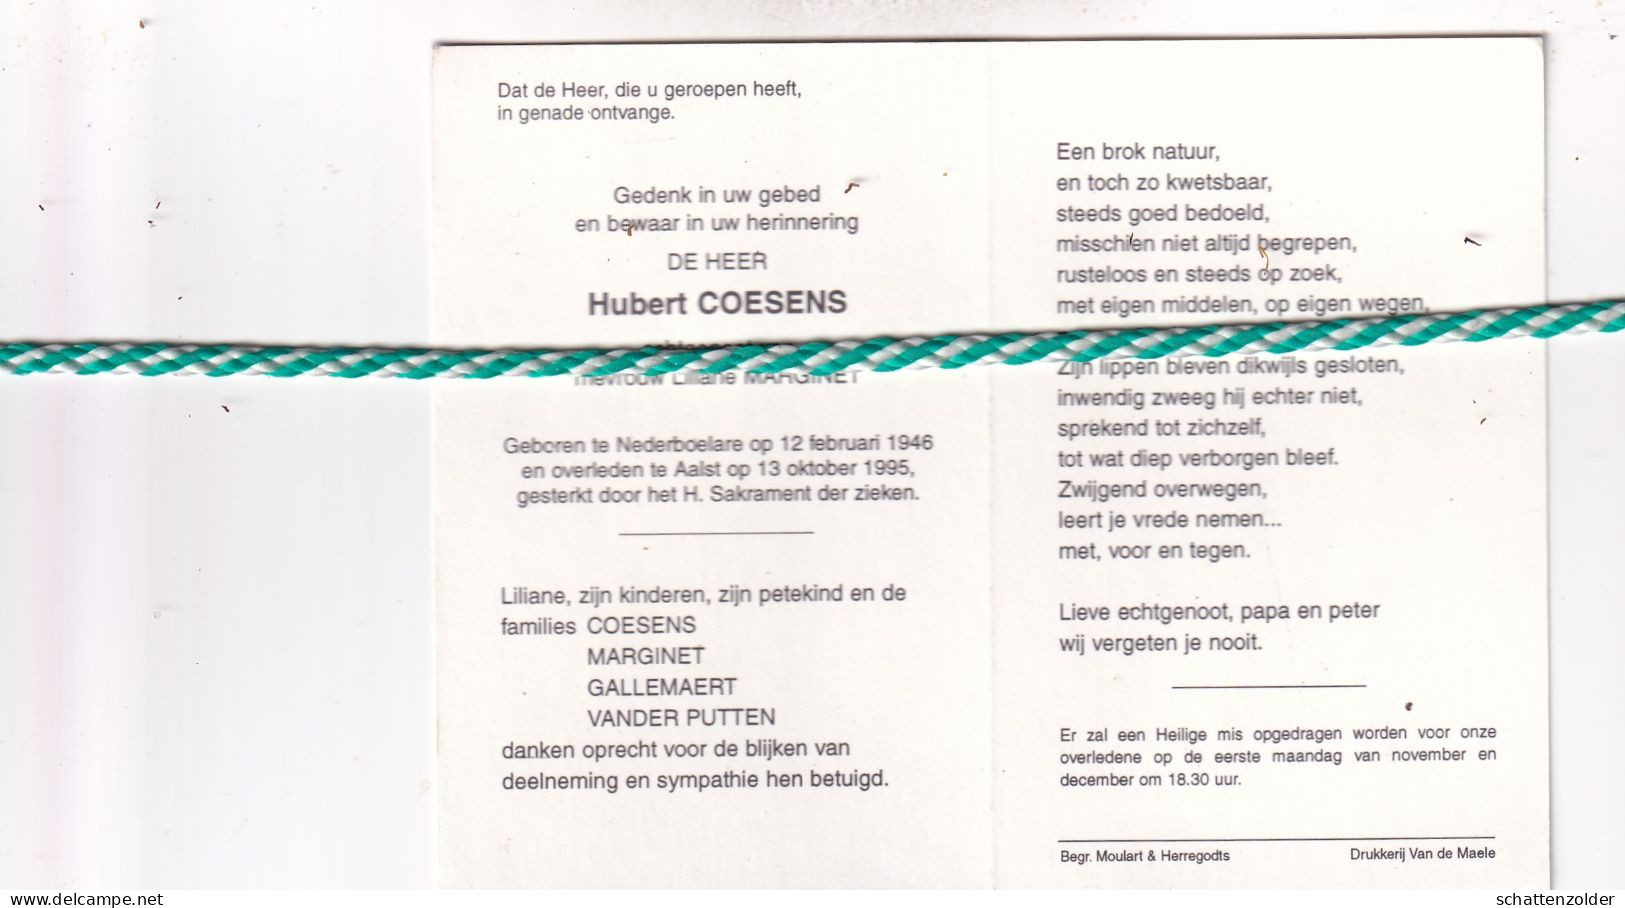 Hubert Coesens-Marginet, Nederboelare 1946, Aalst 1995. Foto - Décès